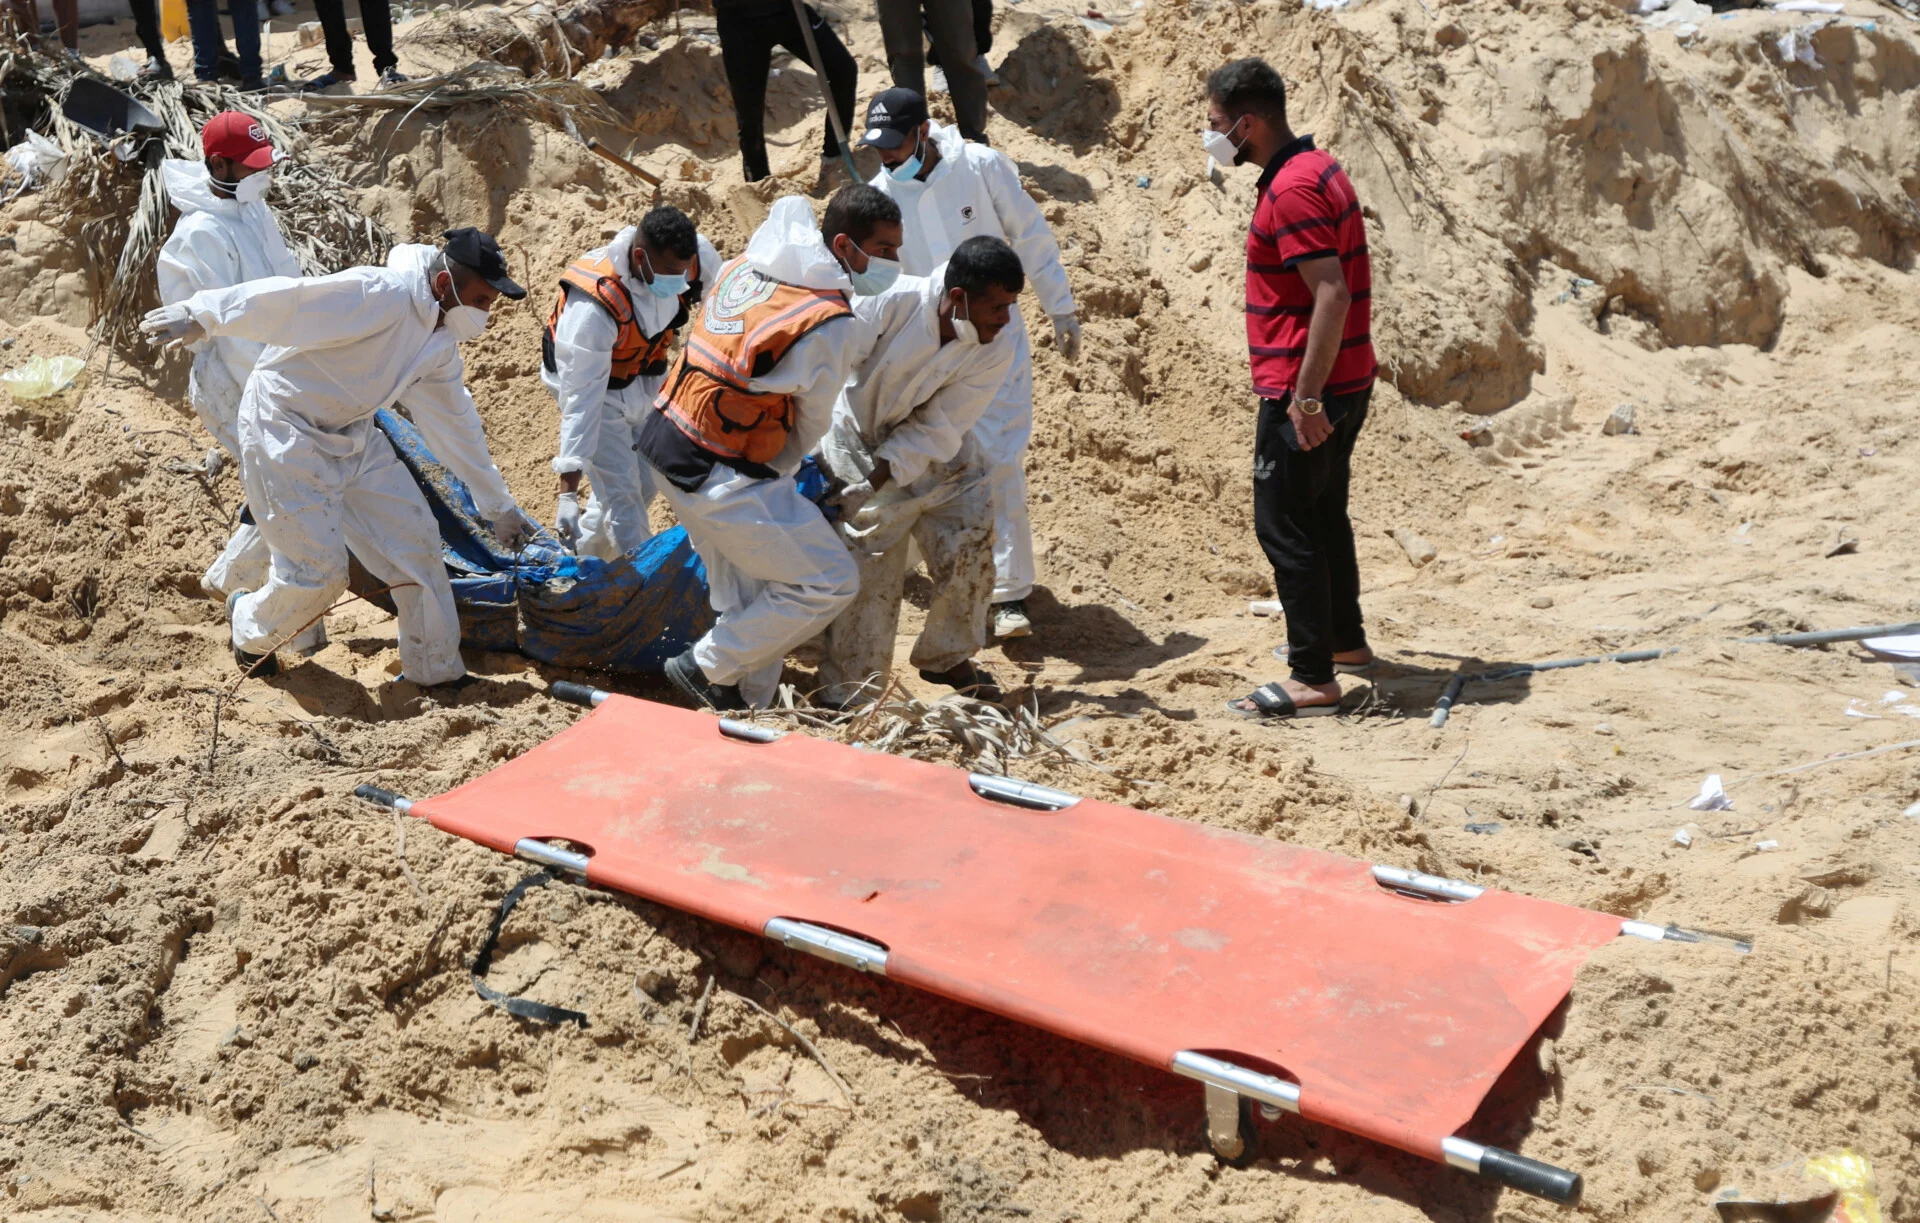 Συνεχίζουν να βρίσκουν πτώματα στη Γάζα – Εντοπίστηκαν περίπου 200 πτώματα σε ομαδικό τάφο στη Χαν Γιουνίς